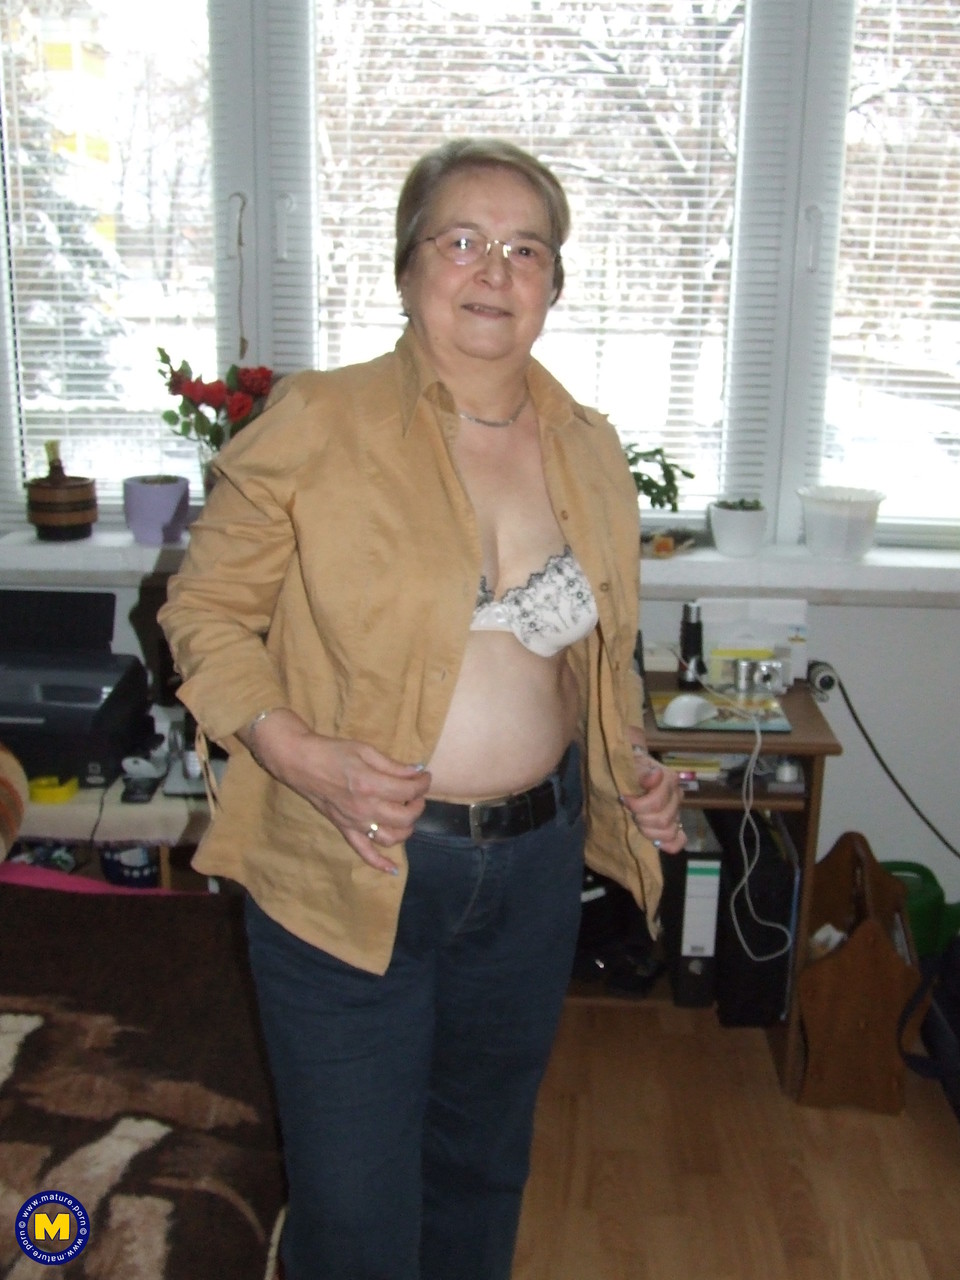 Fat European granny Sybille stripping off her clothes and skin tone tights photo porno #423867228 | Mature NL Pics, Sybille, Granny, porno mobile